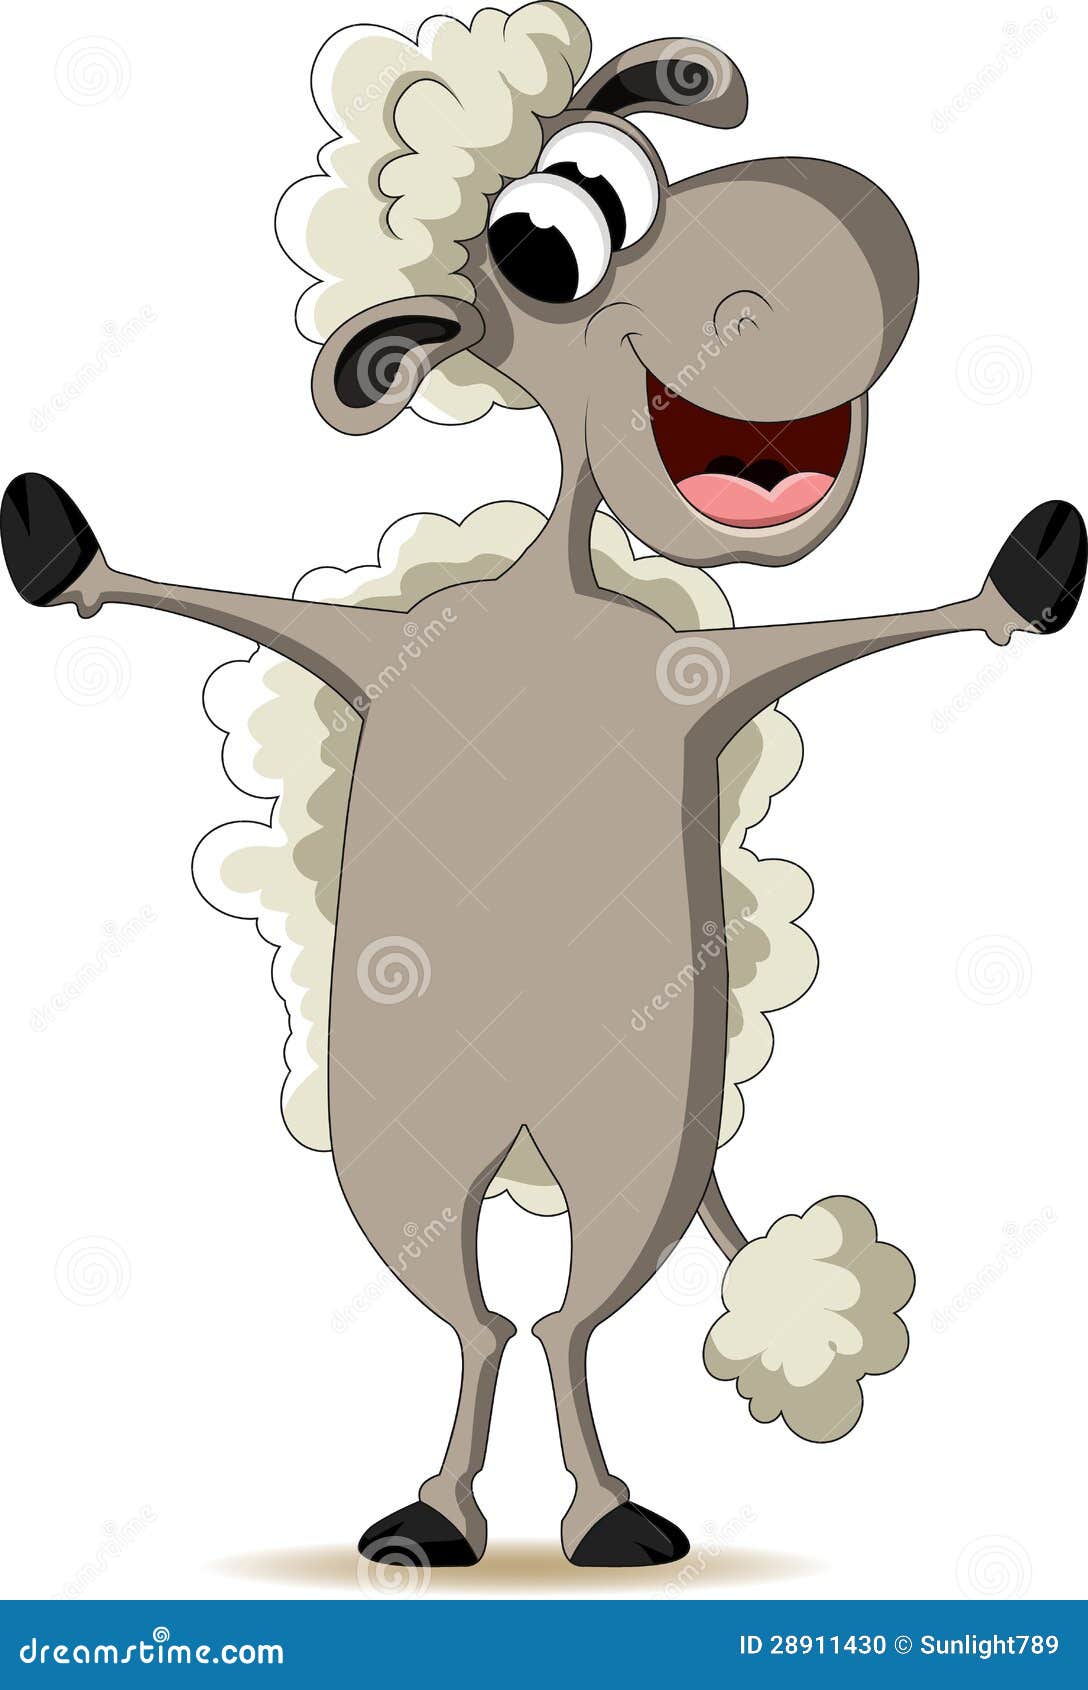 Funny Sheep Cartoon Stock Photo - Image: 28911430